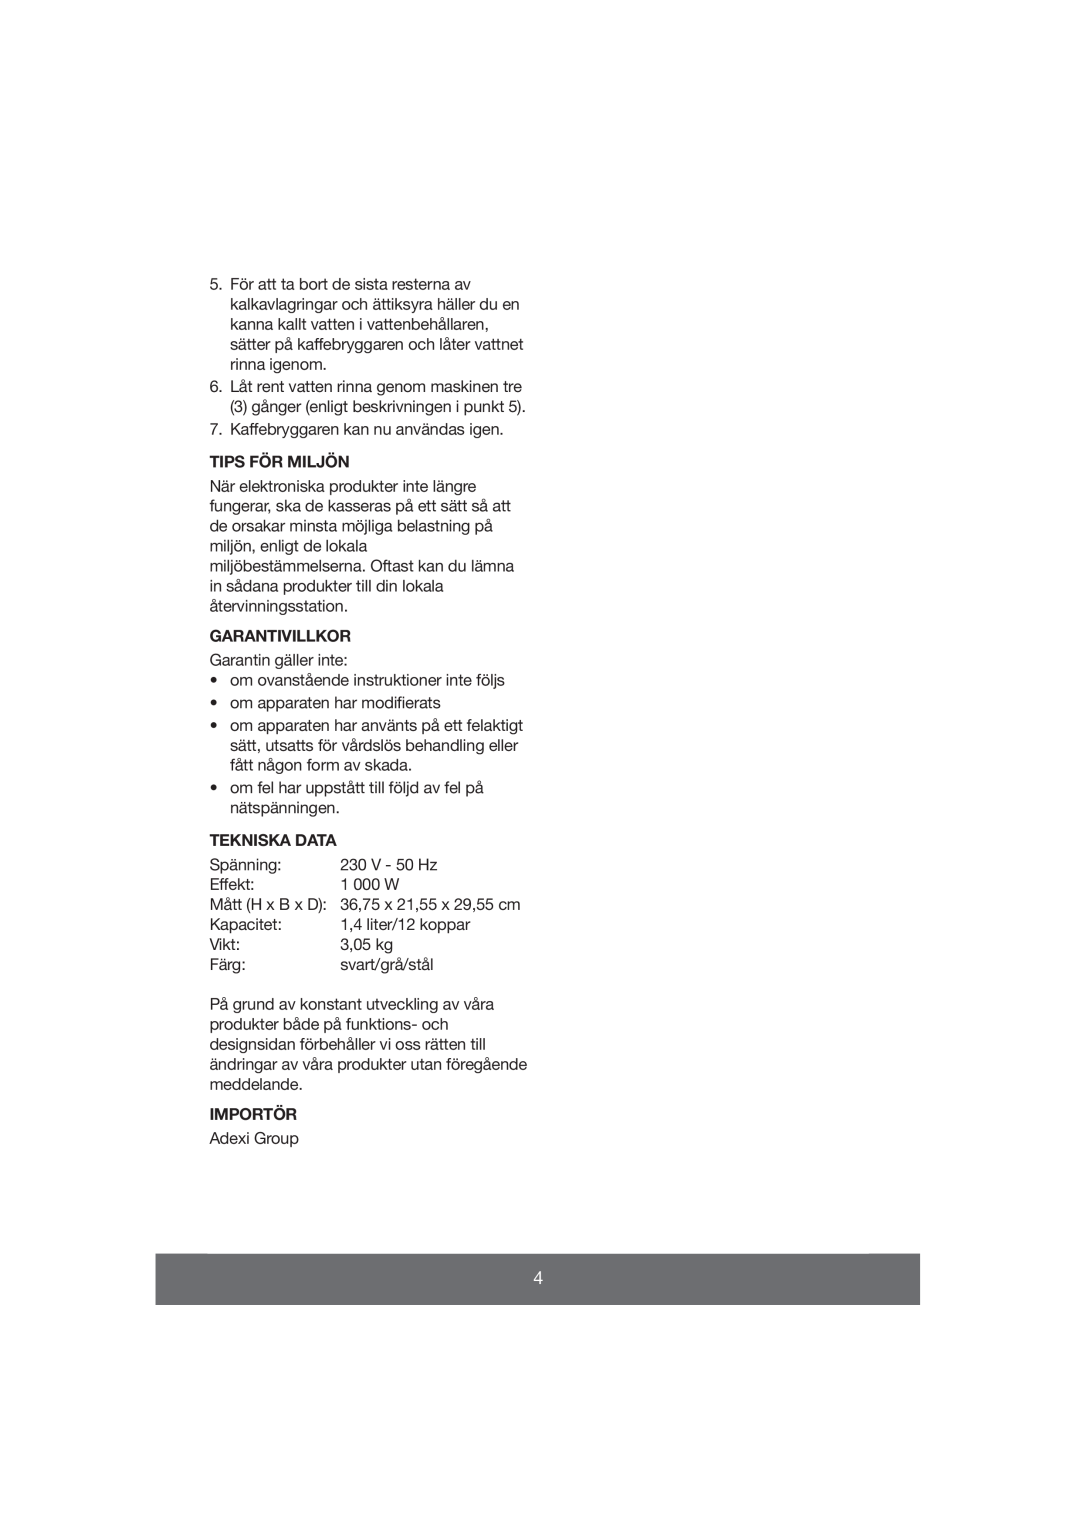 Butler 645-061 manual Tips För Miljön, Garantivillkor, Tekniska Data, Importör 